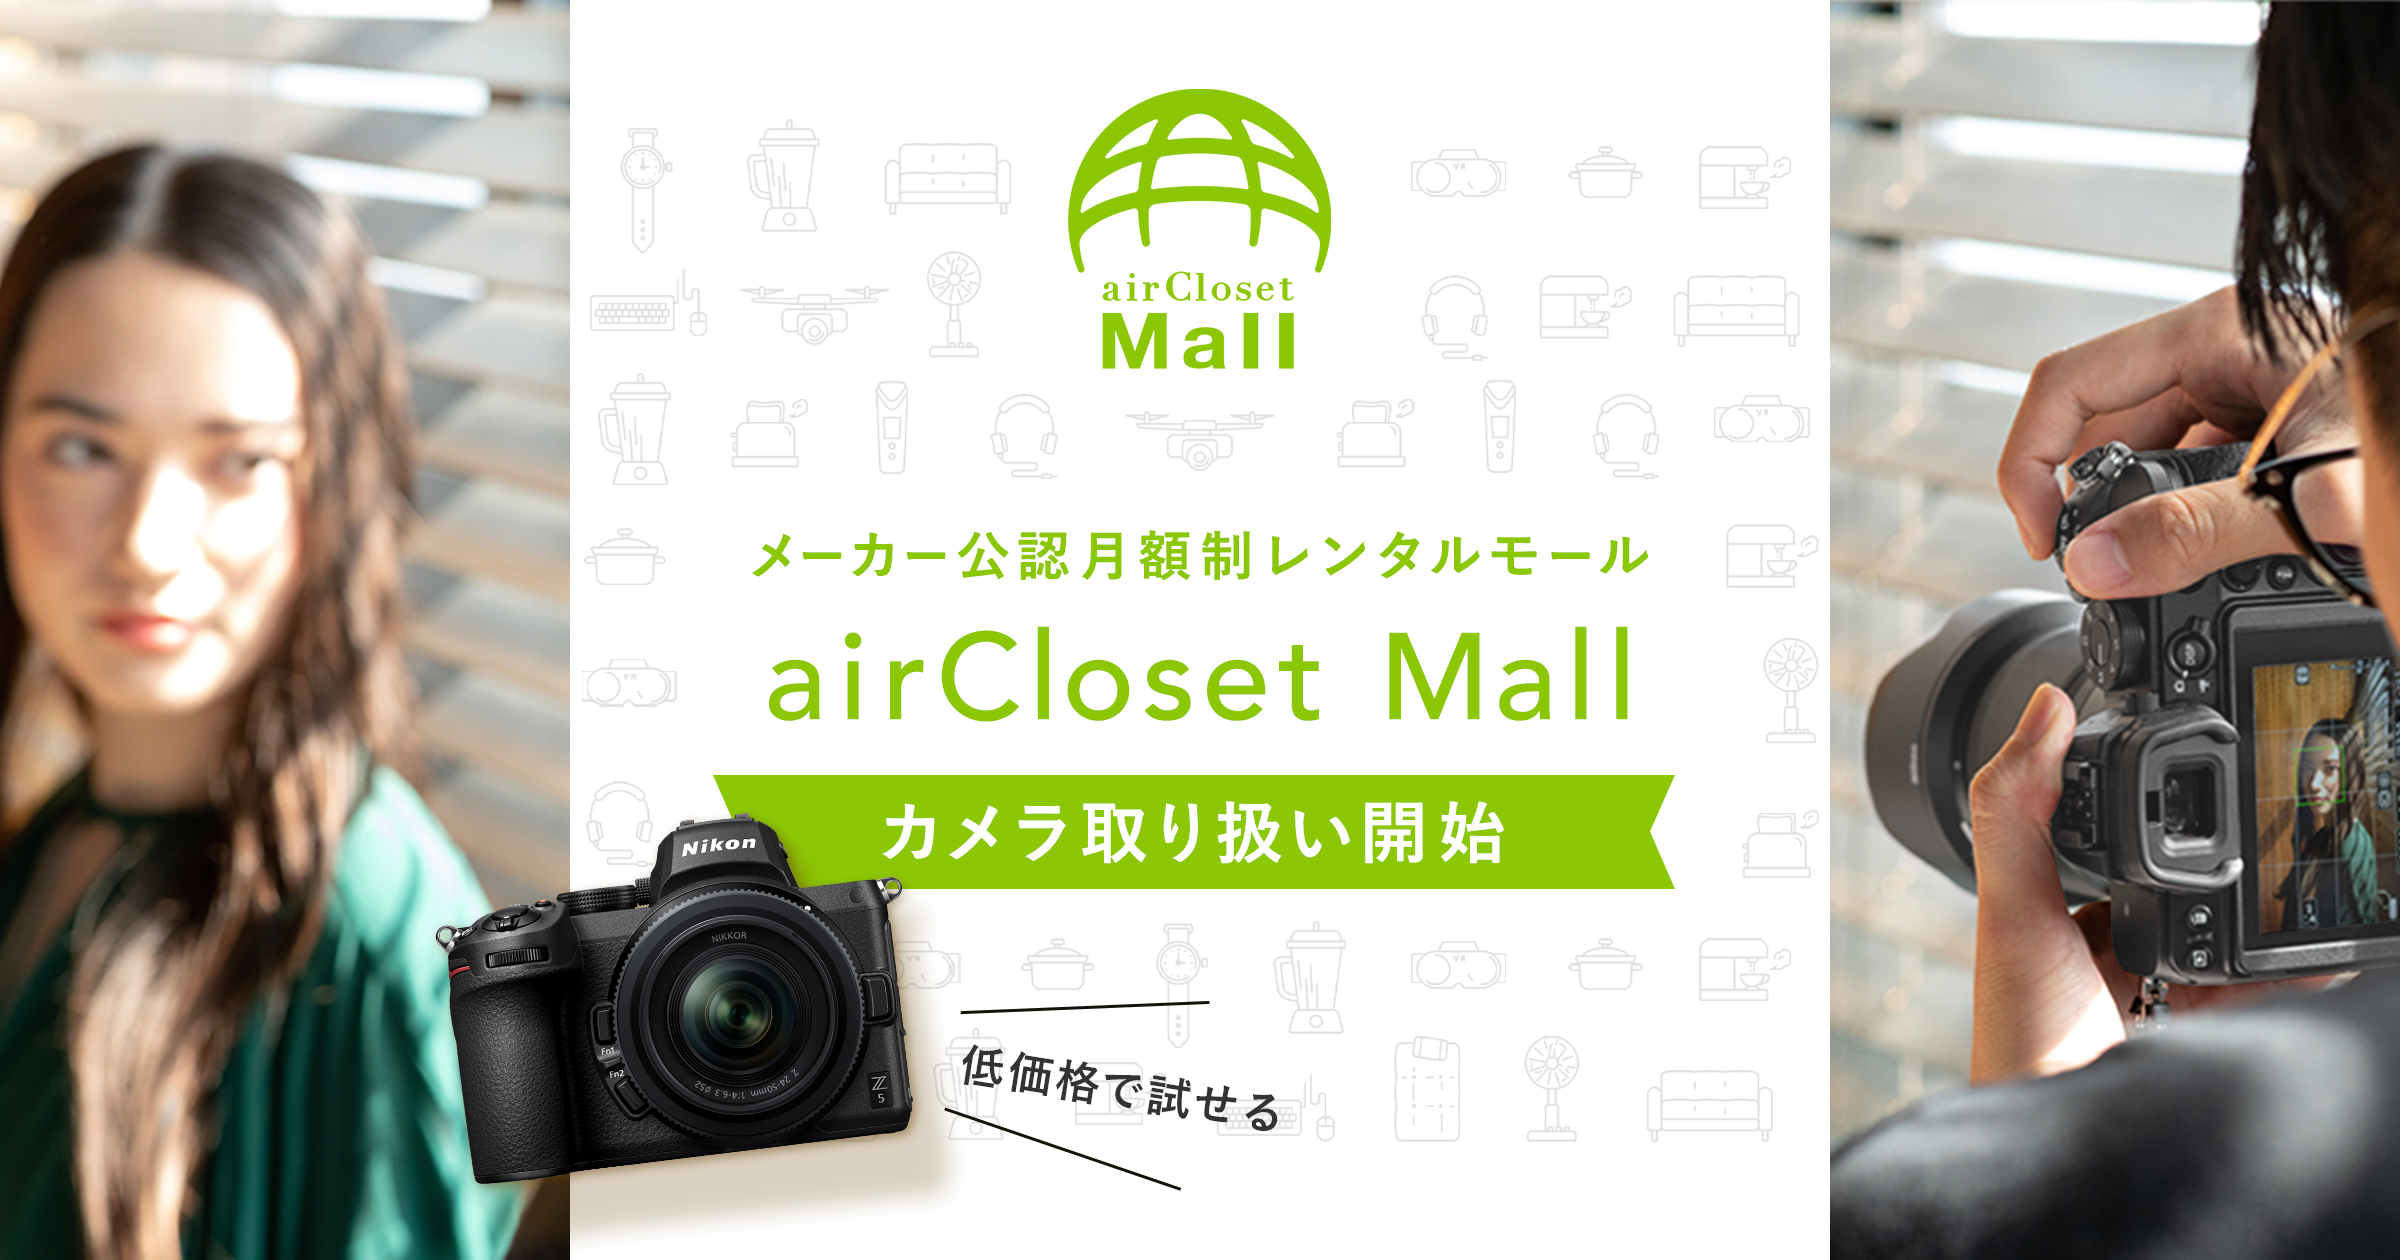 月額制レンタル Aircloset Mall で ニコンがカメラ業界初のメーカー公式レンタルサービスを開始 株式会社エアークローゼットのプレスリリース